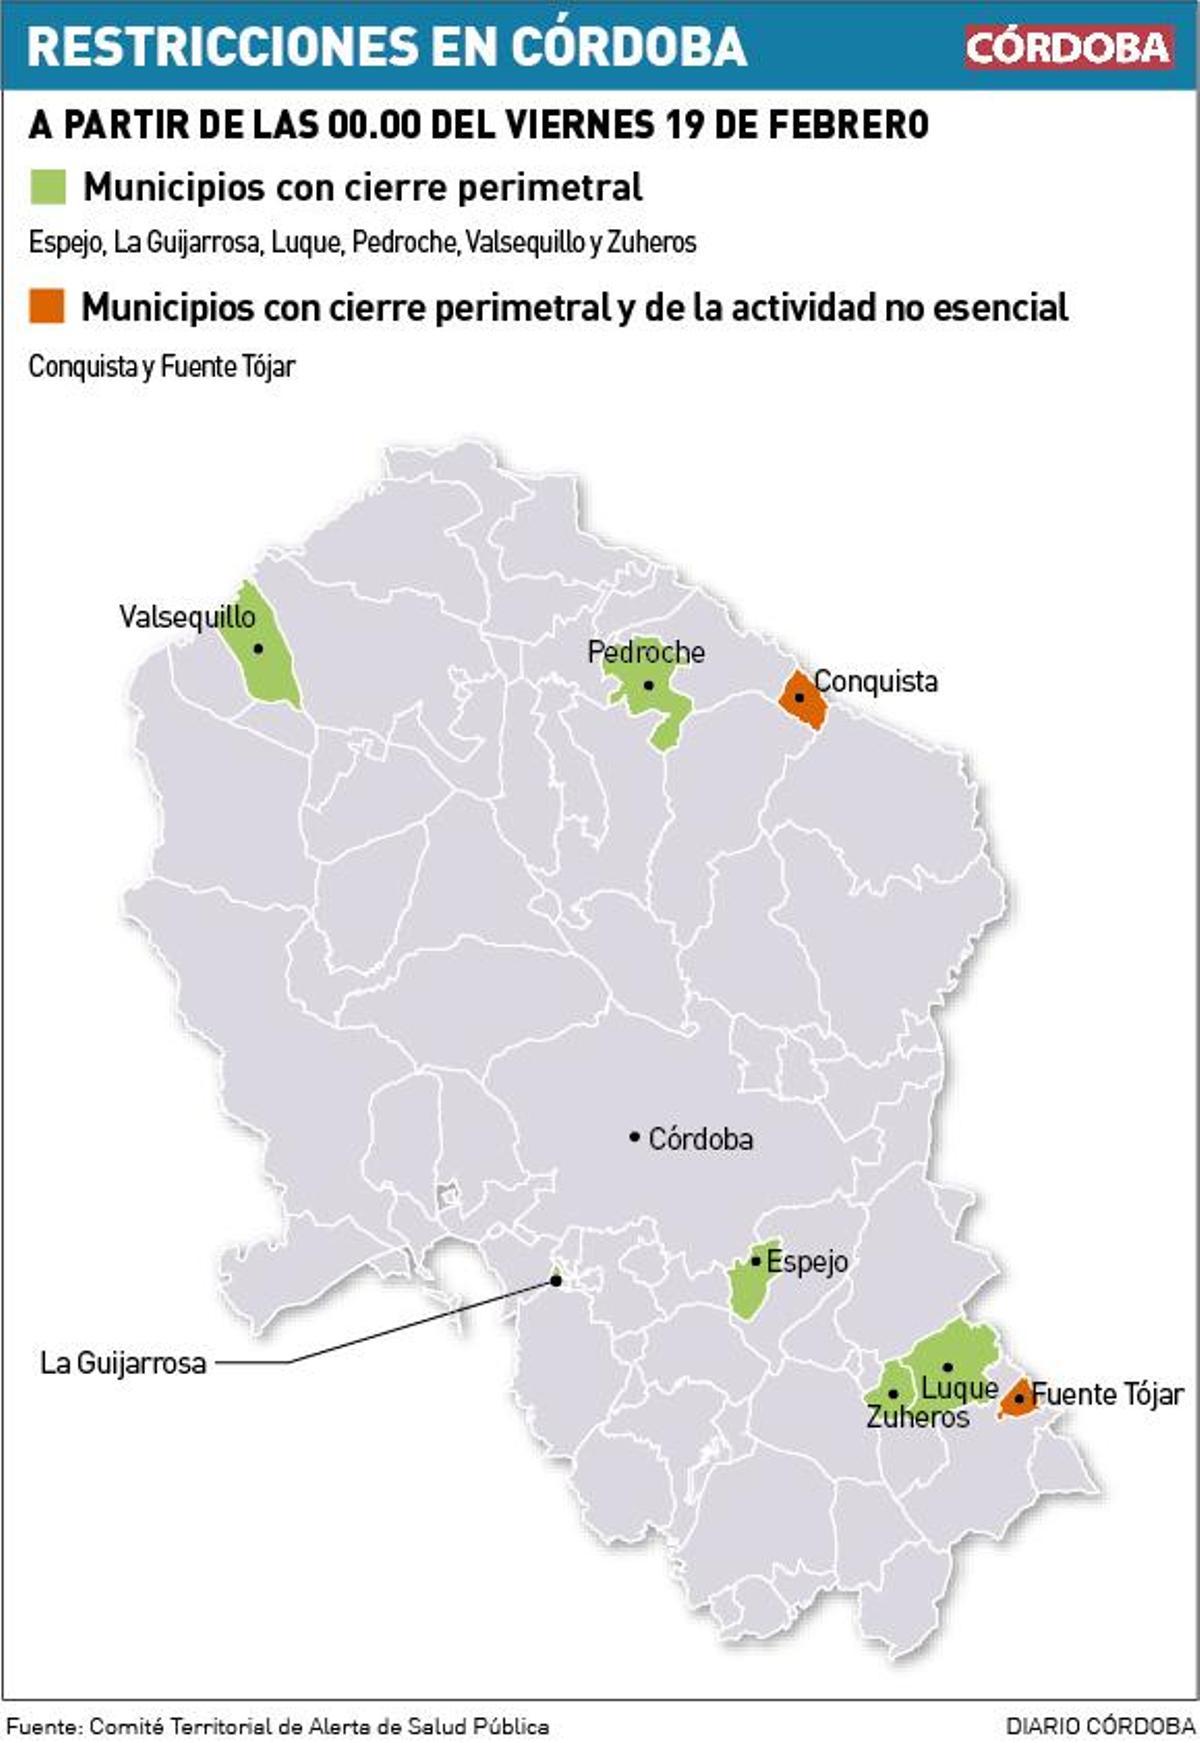 Coronavirus en Córdoba: ¿Cuáles son los municipios con cierre perimetral desde este viernes 19 de febrero?